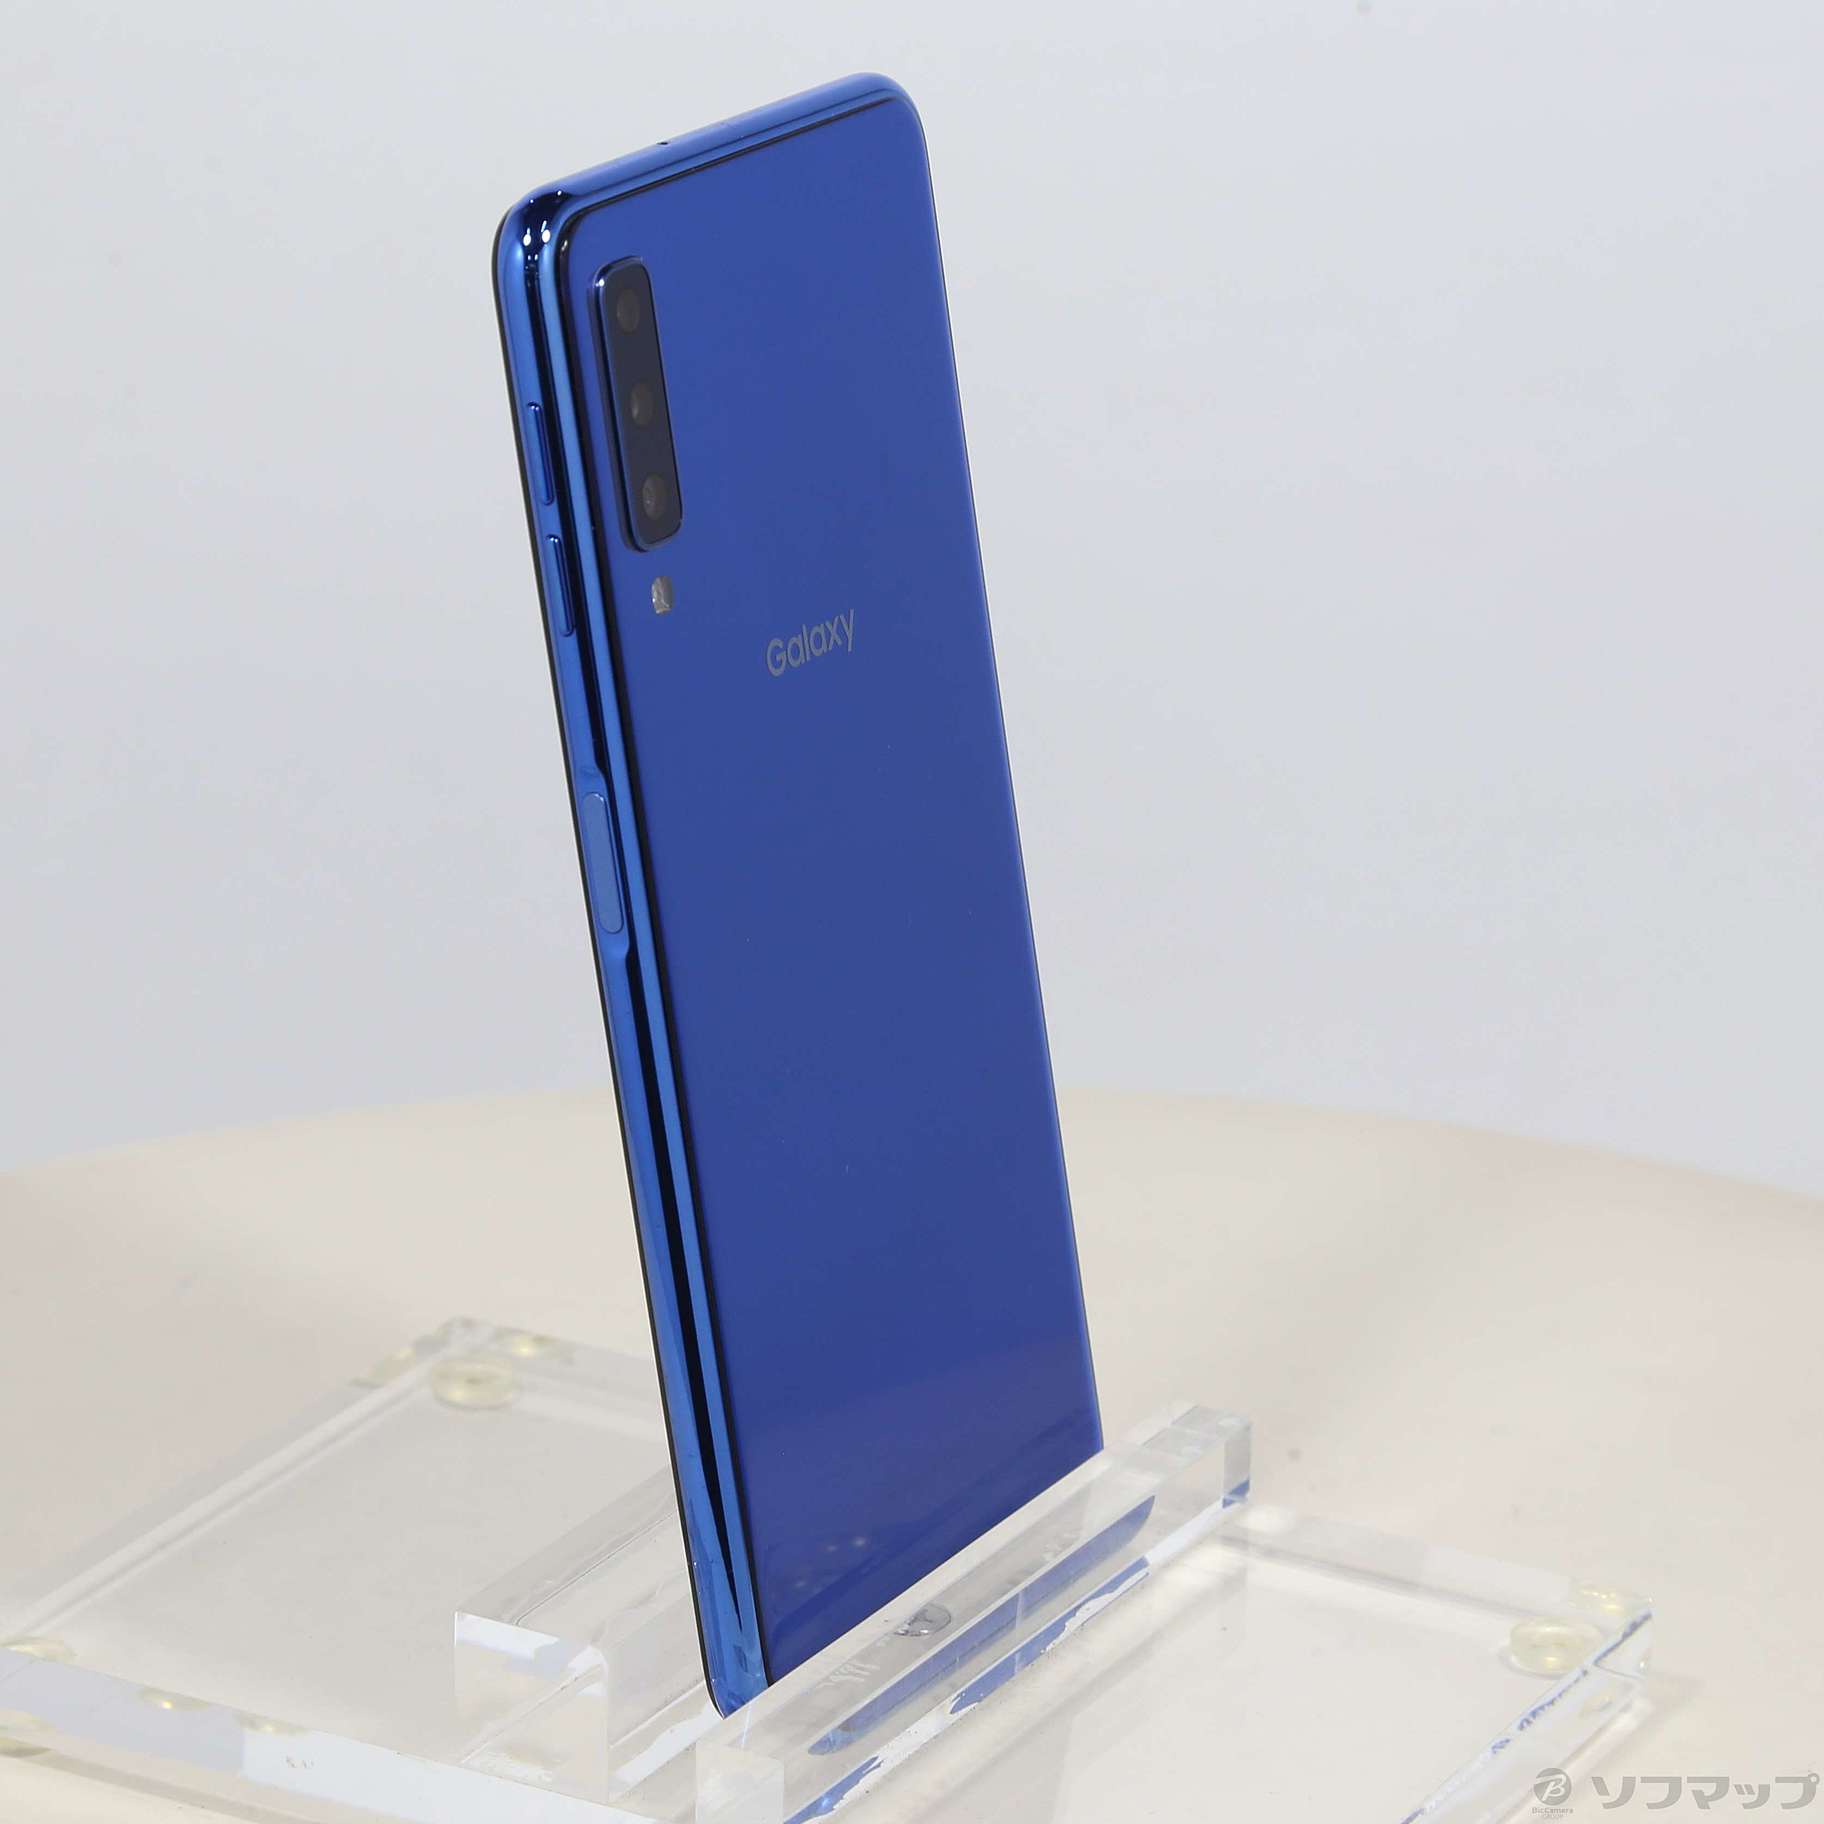 Galaxy A7 ブルー 64 GB SIMフリー SM-A750C - スマートフォン本体